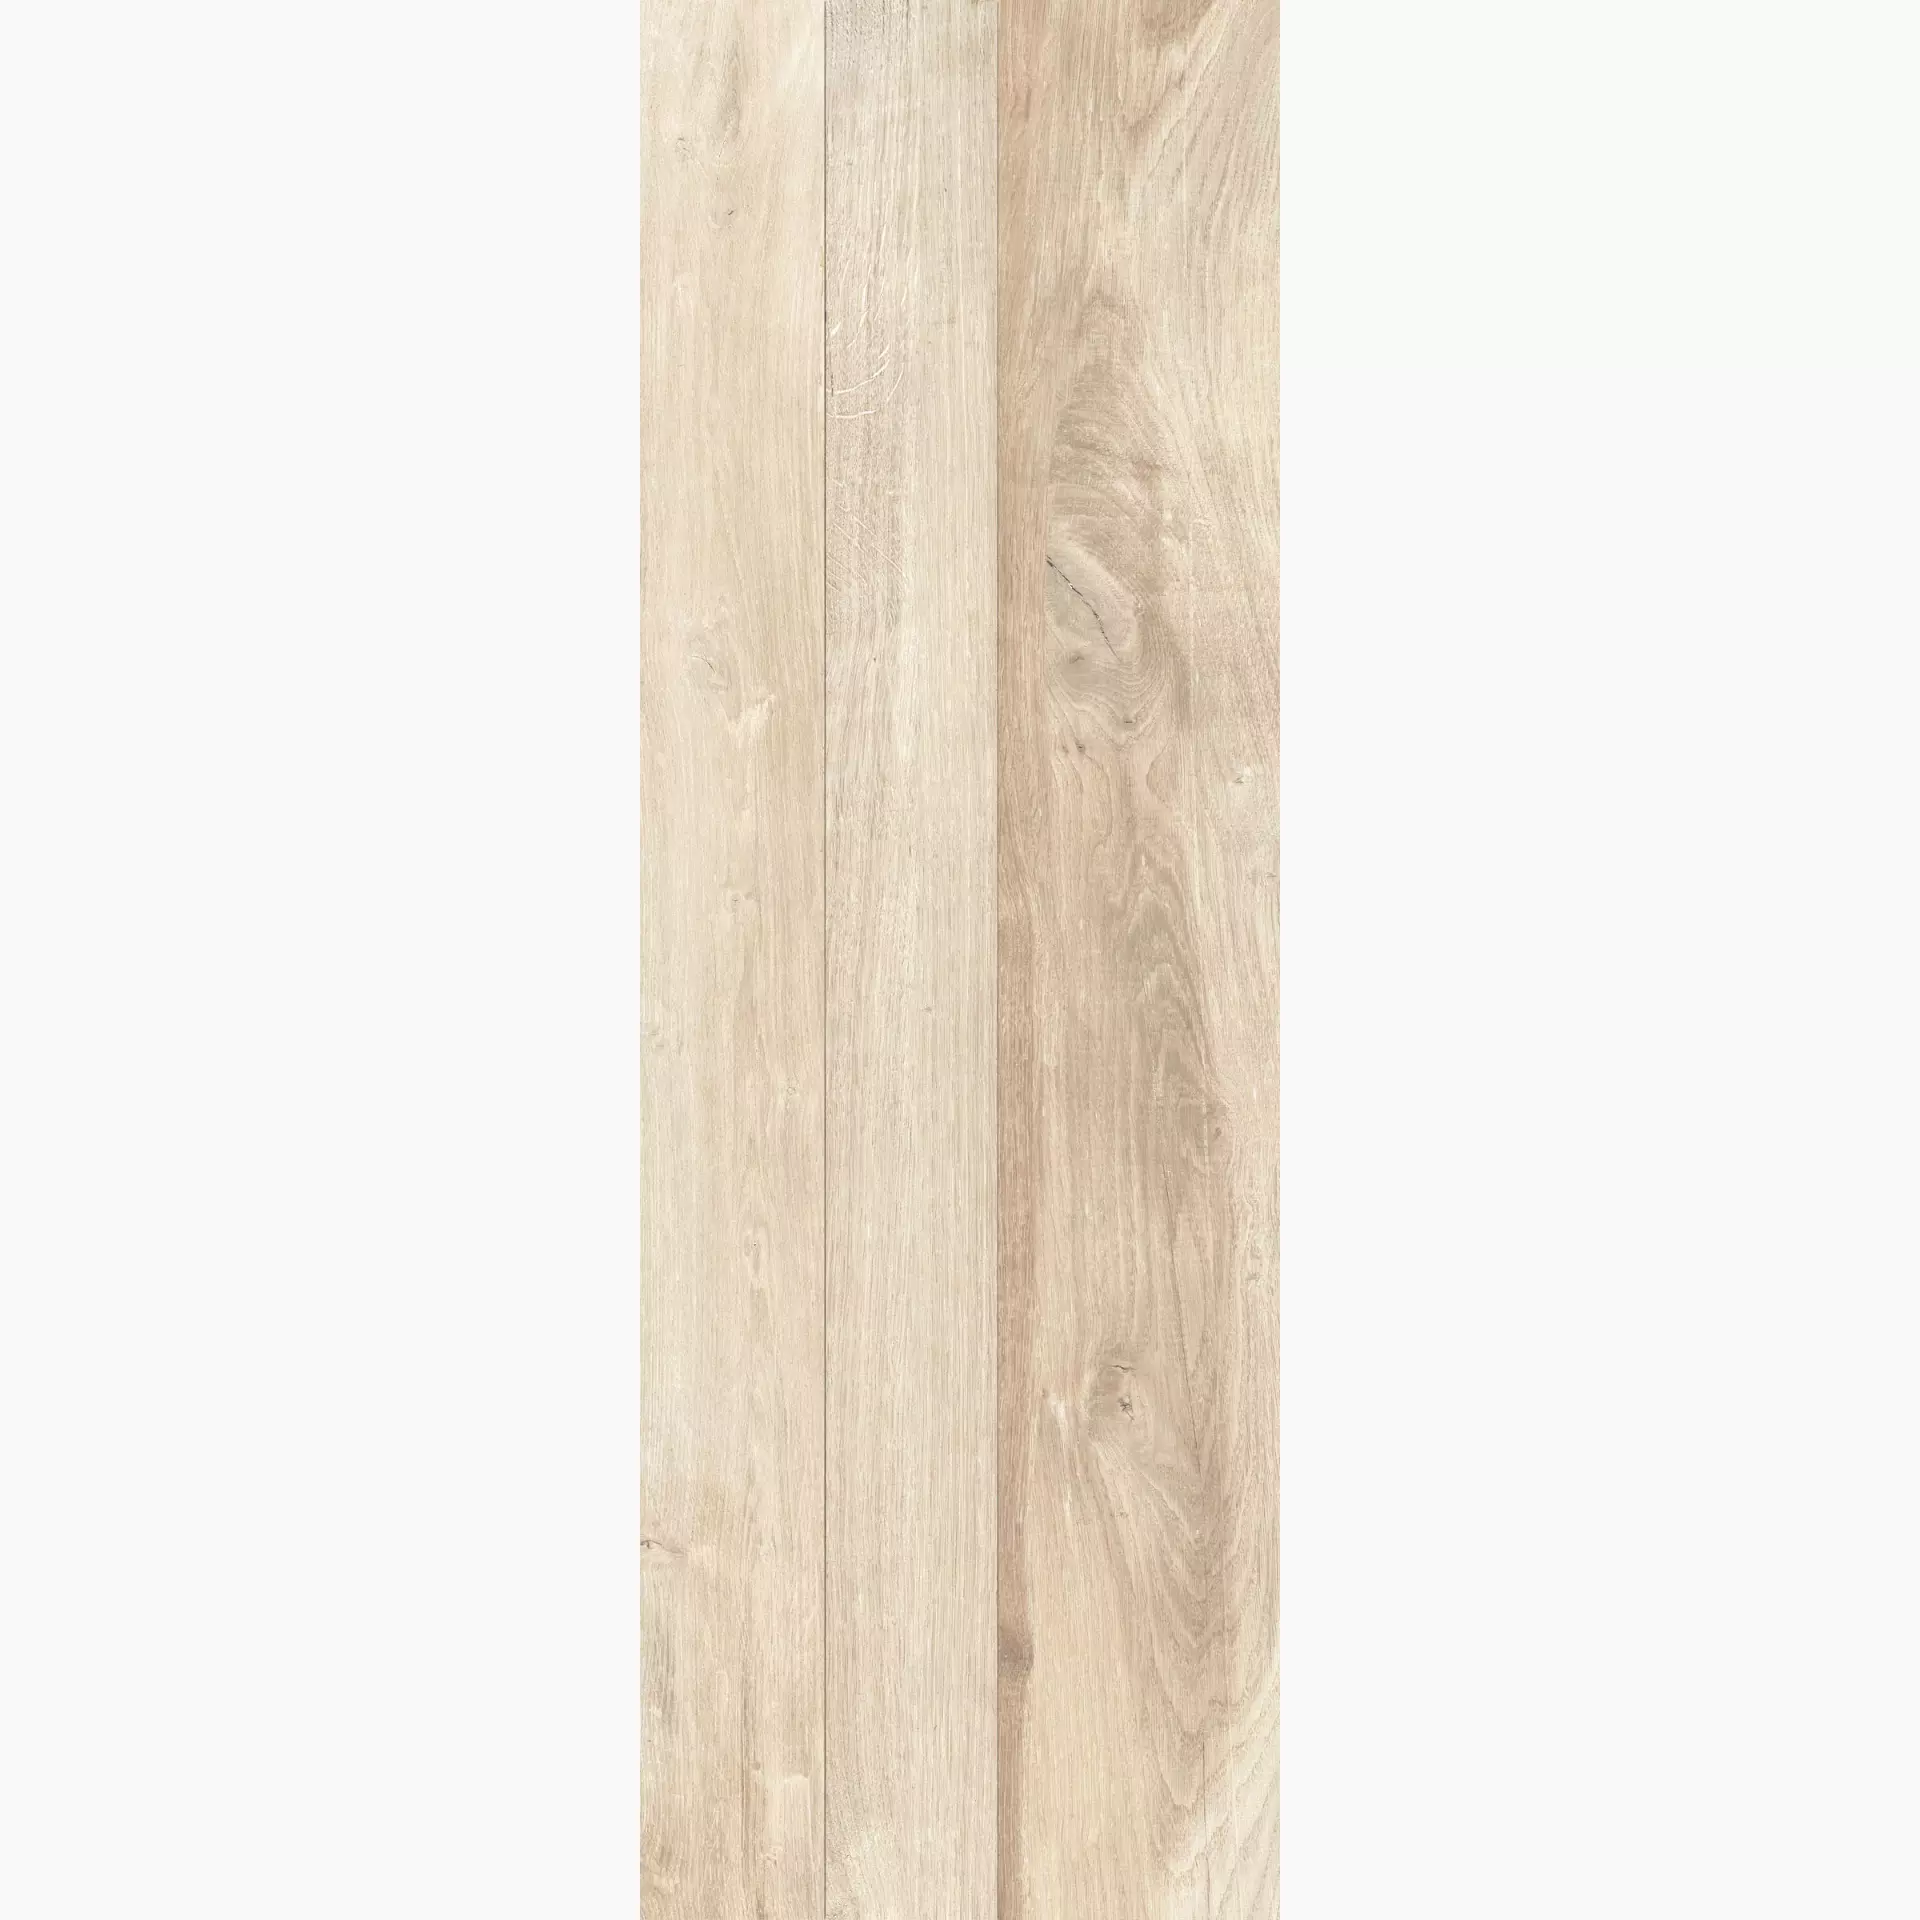 KRONOS Woodside Oak Grip Oak 6651 grip 40x120cm Dekor Doga 2.0 rektifiziert 20mm